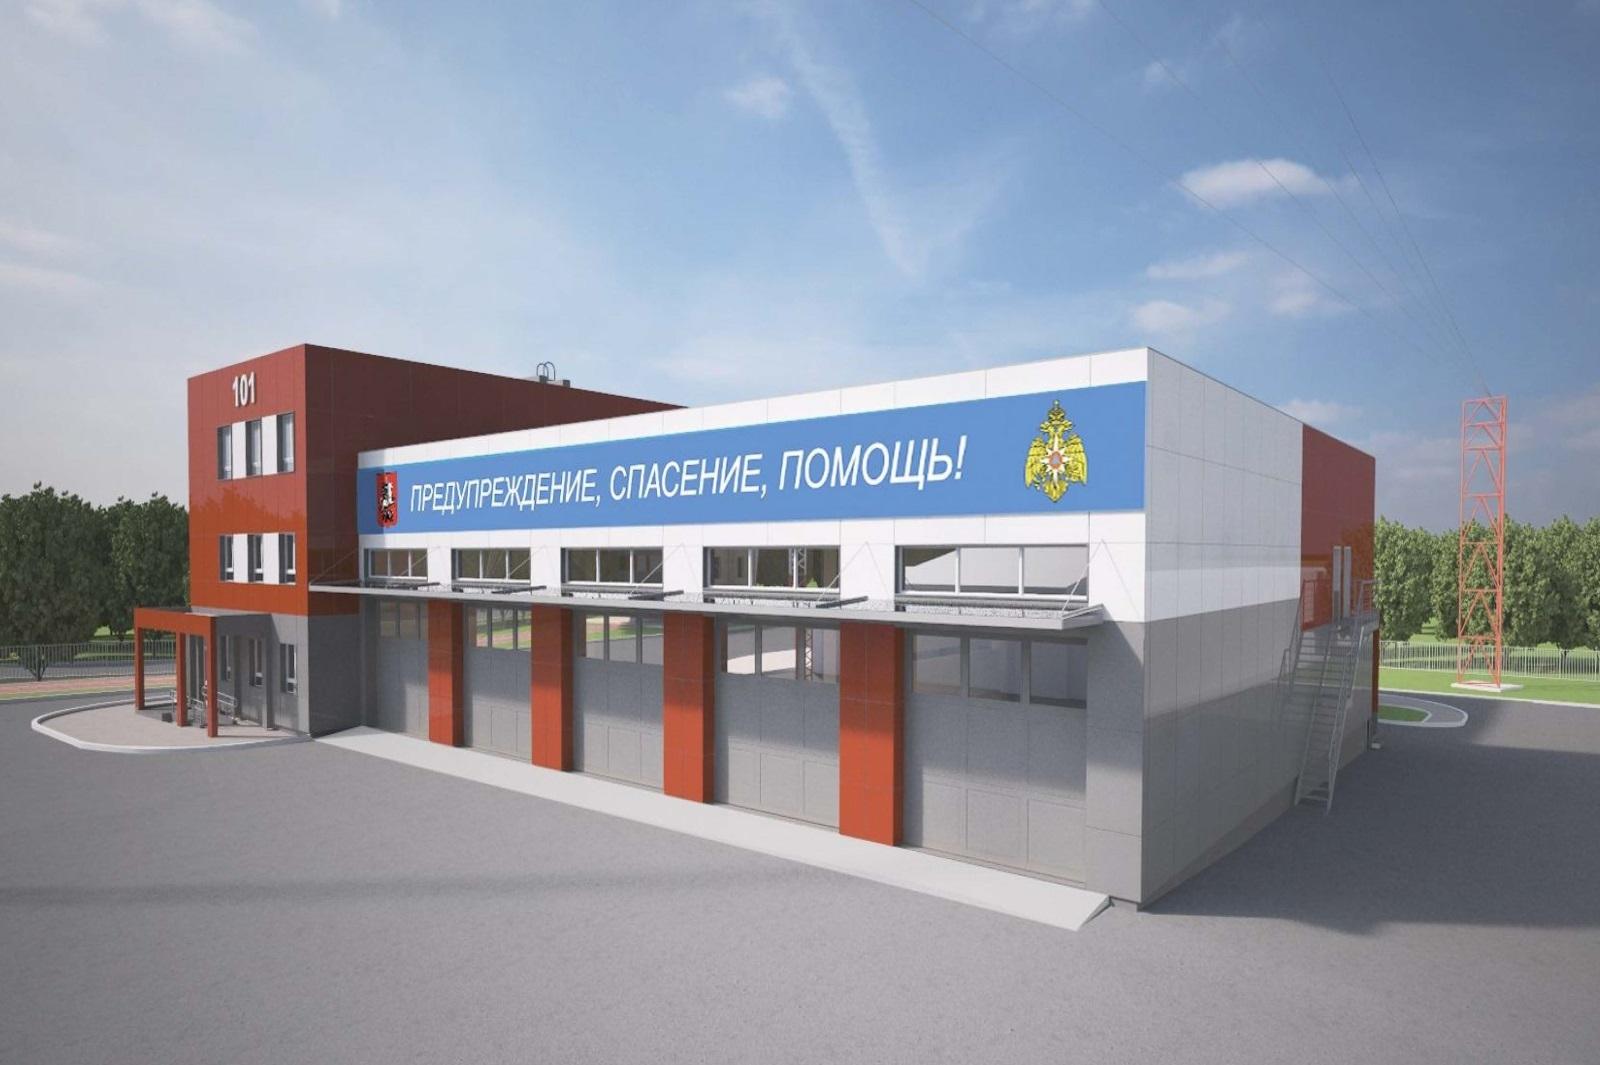 12 пожарных депо появятся в Новой Москве в ближайшие годы